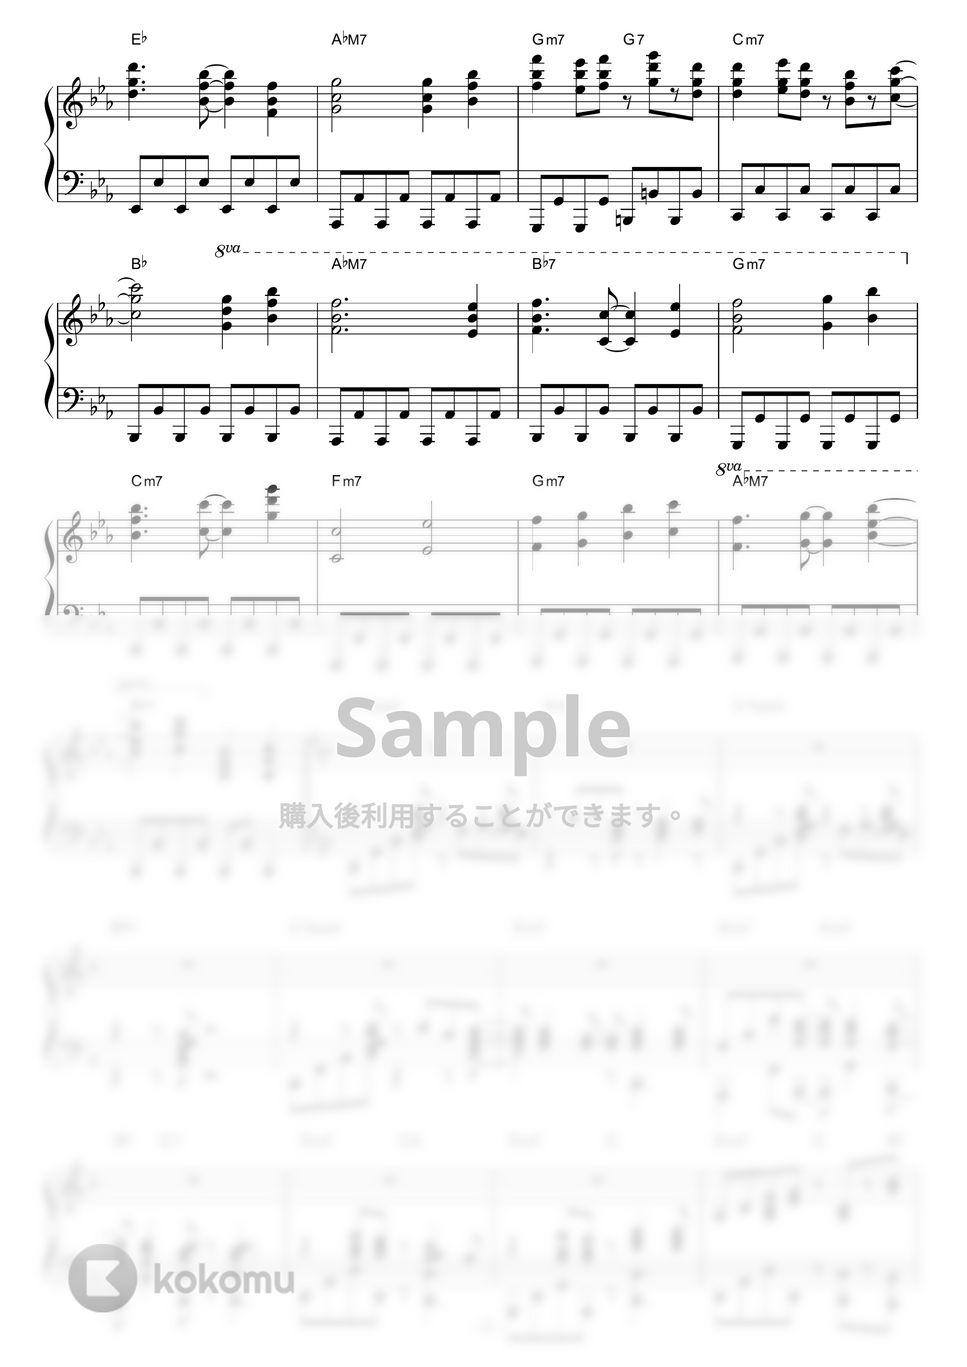 SANOVA - 東海道メガロポリス by piano*score